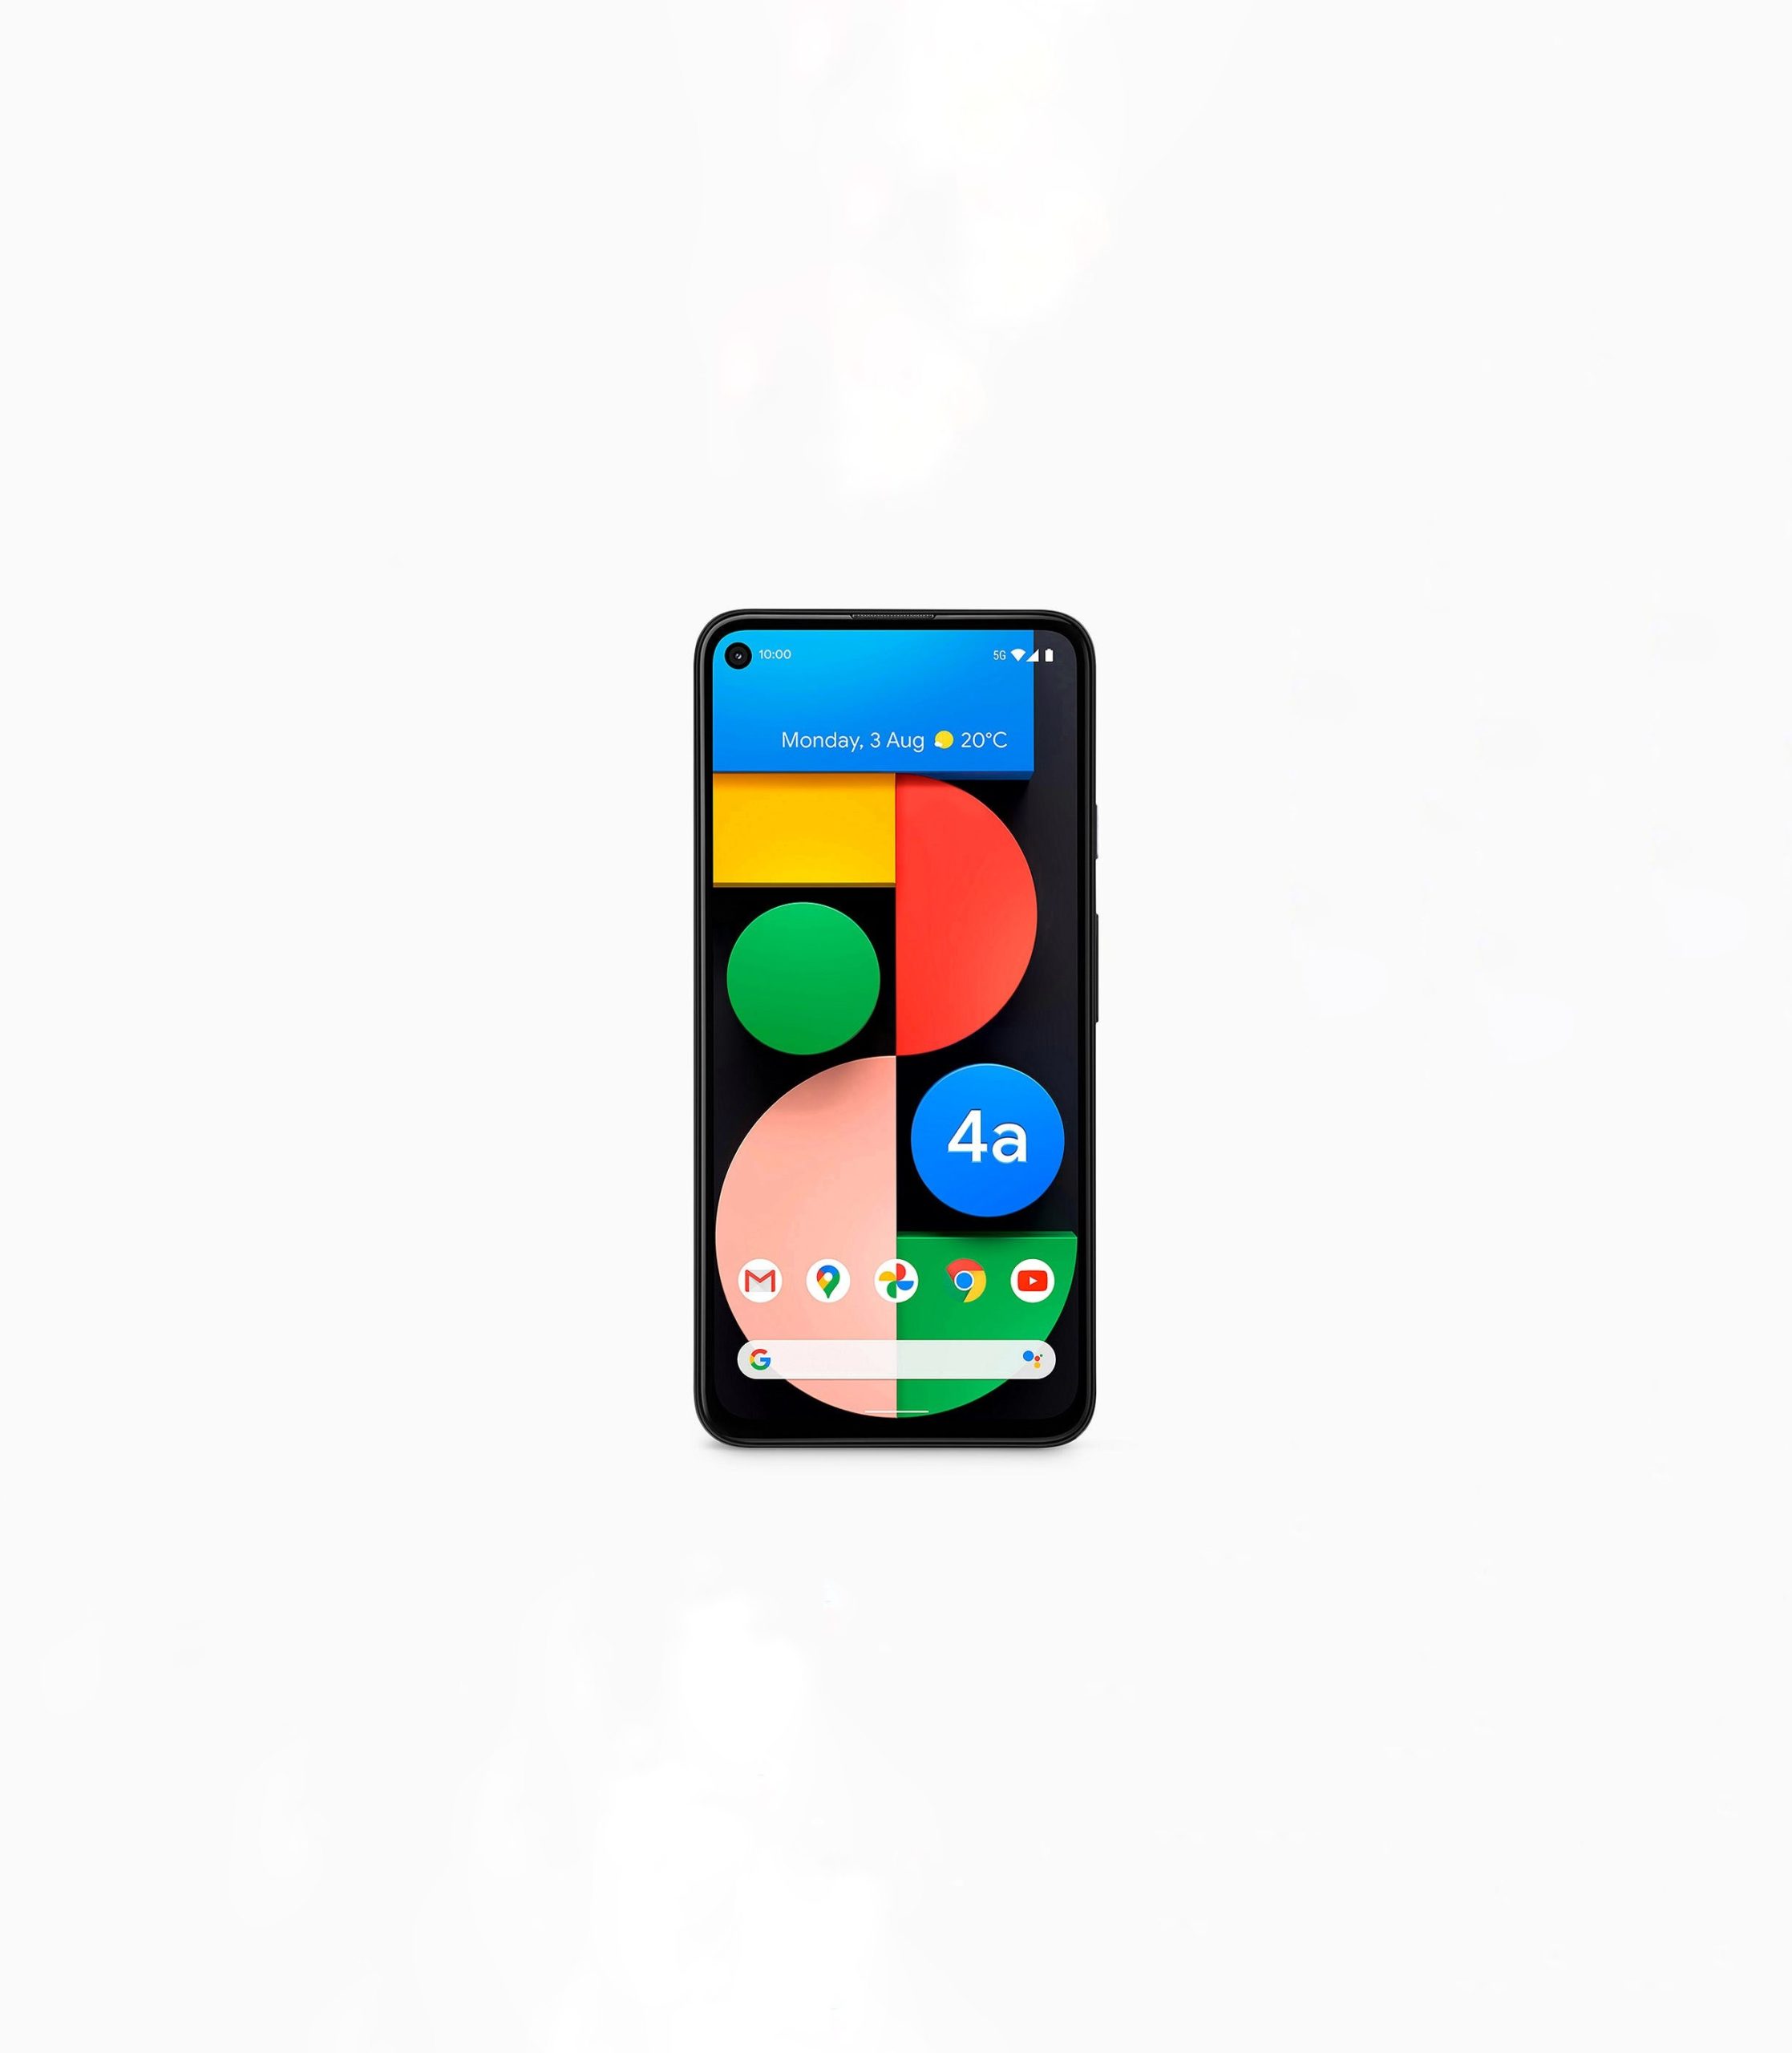 Google Pixel 4a 5G Pressebild